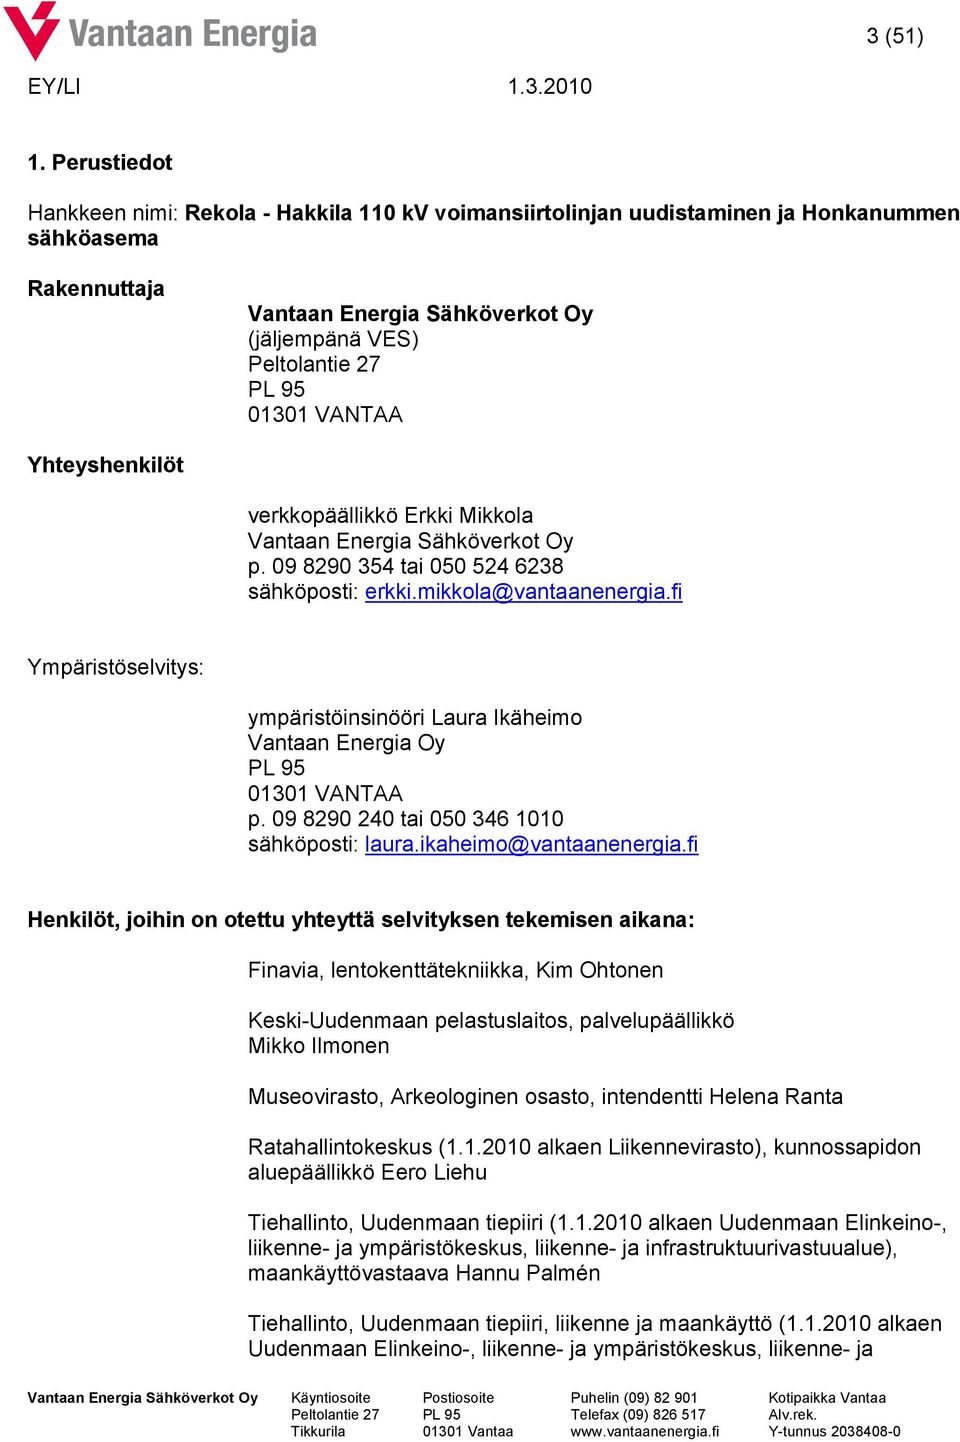 VANTAA Yhteyshenkilöt verkkopäällikkö Erkki Mikkola Vantaan Energia Sähköverkot Oy p. 09 8290 354 tai 050 524 6238 sähköposti: erkki.mikkola@vantaanenergia.